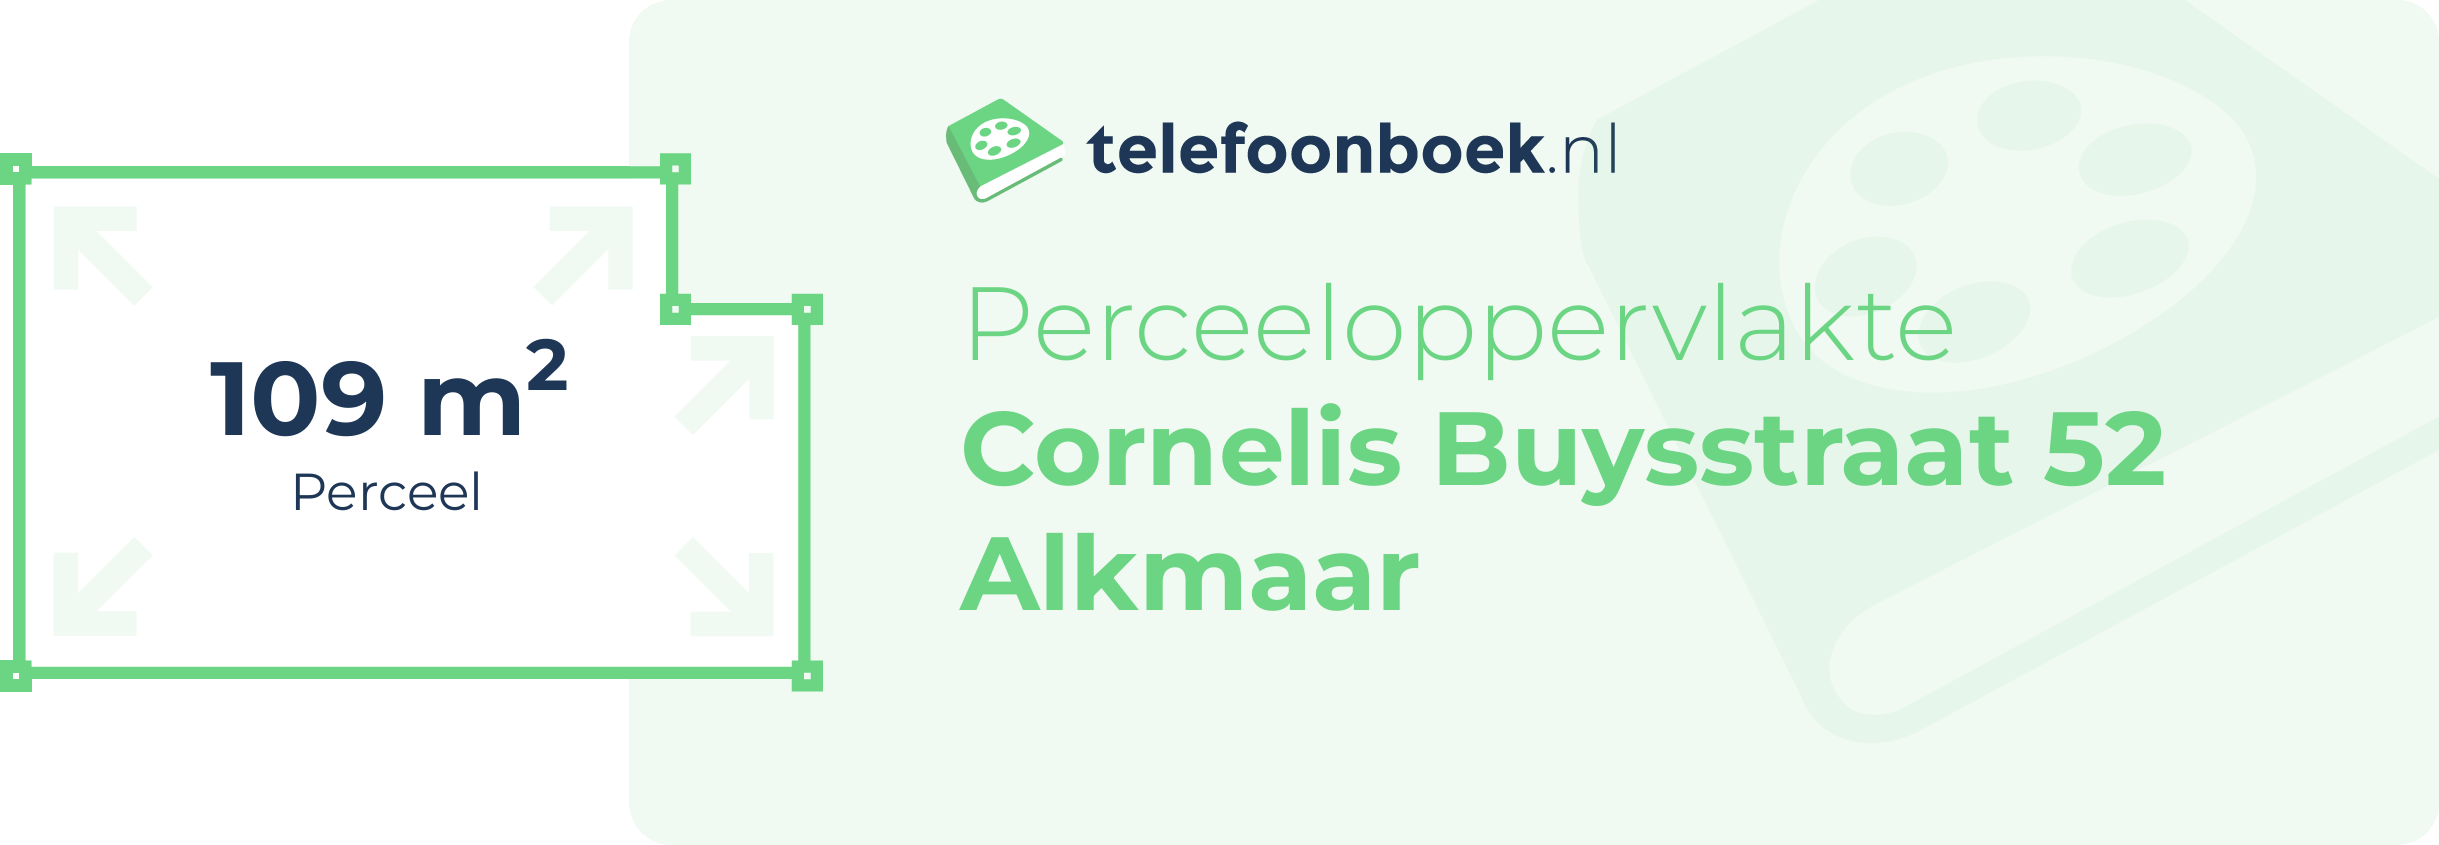 Perceeloppervlakte Cornelis Buysstraat 52 Alkmaar